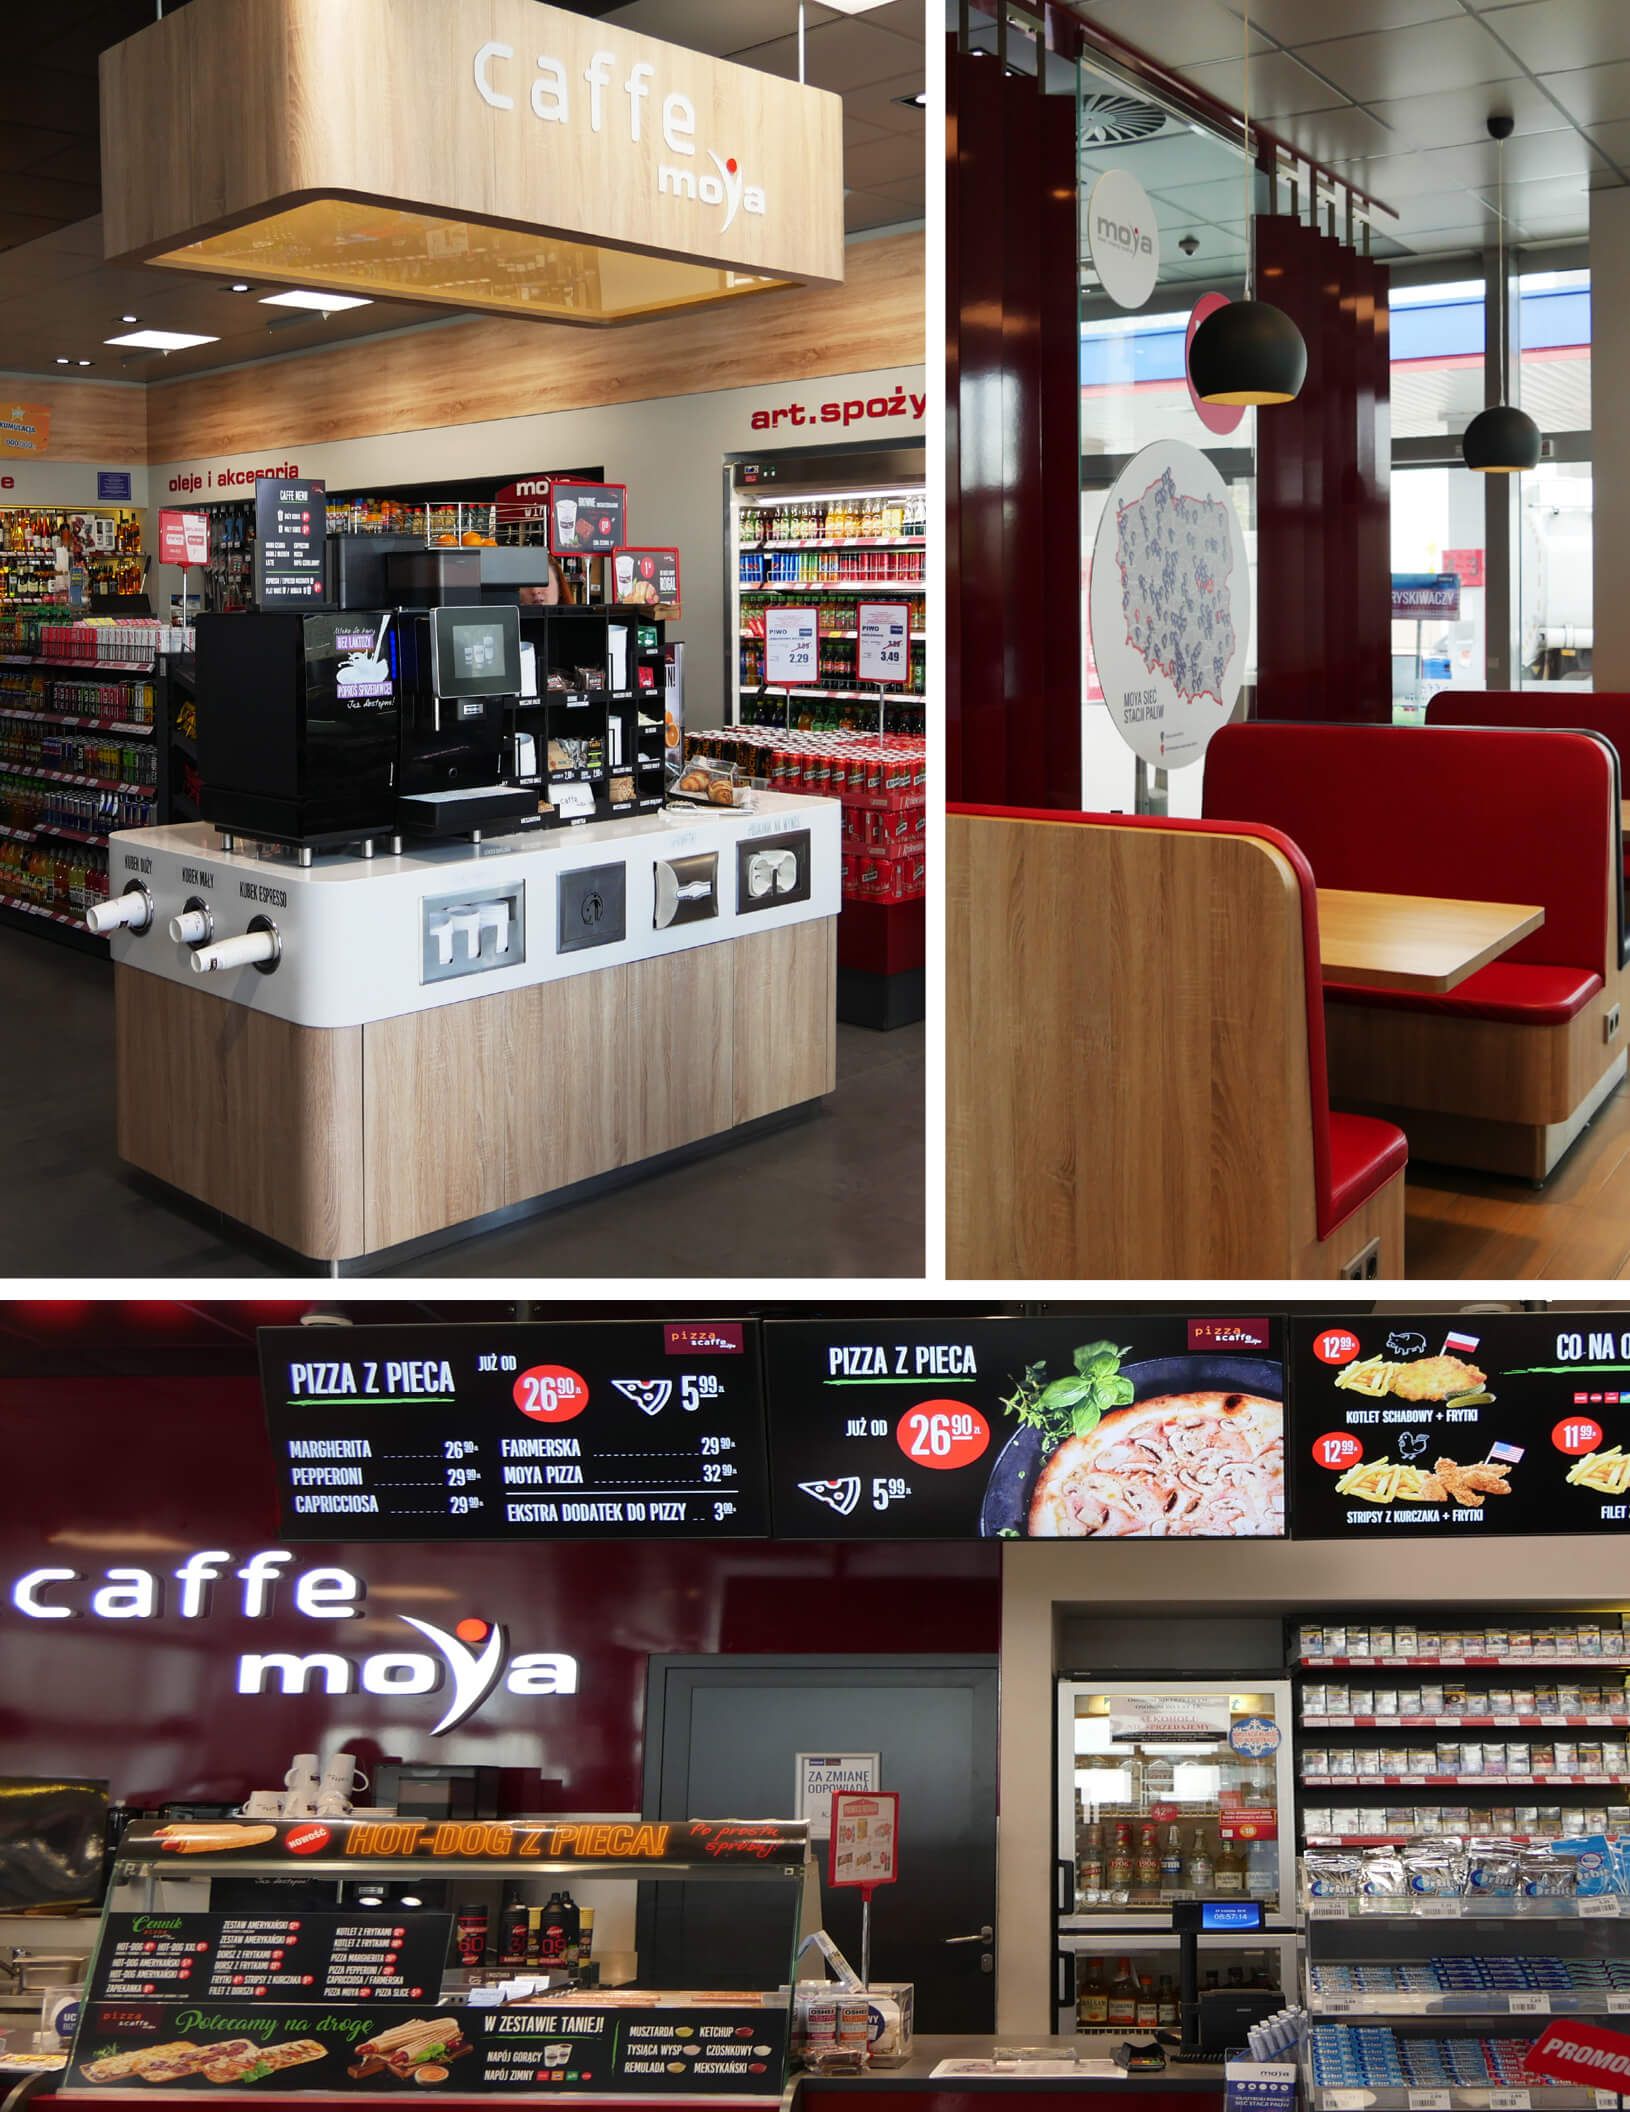 Станции MOYA предлагают своим клиентам вкусный кофе и закуски, доступные в рамках гастрономической концепции MOYA Caffe